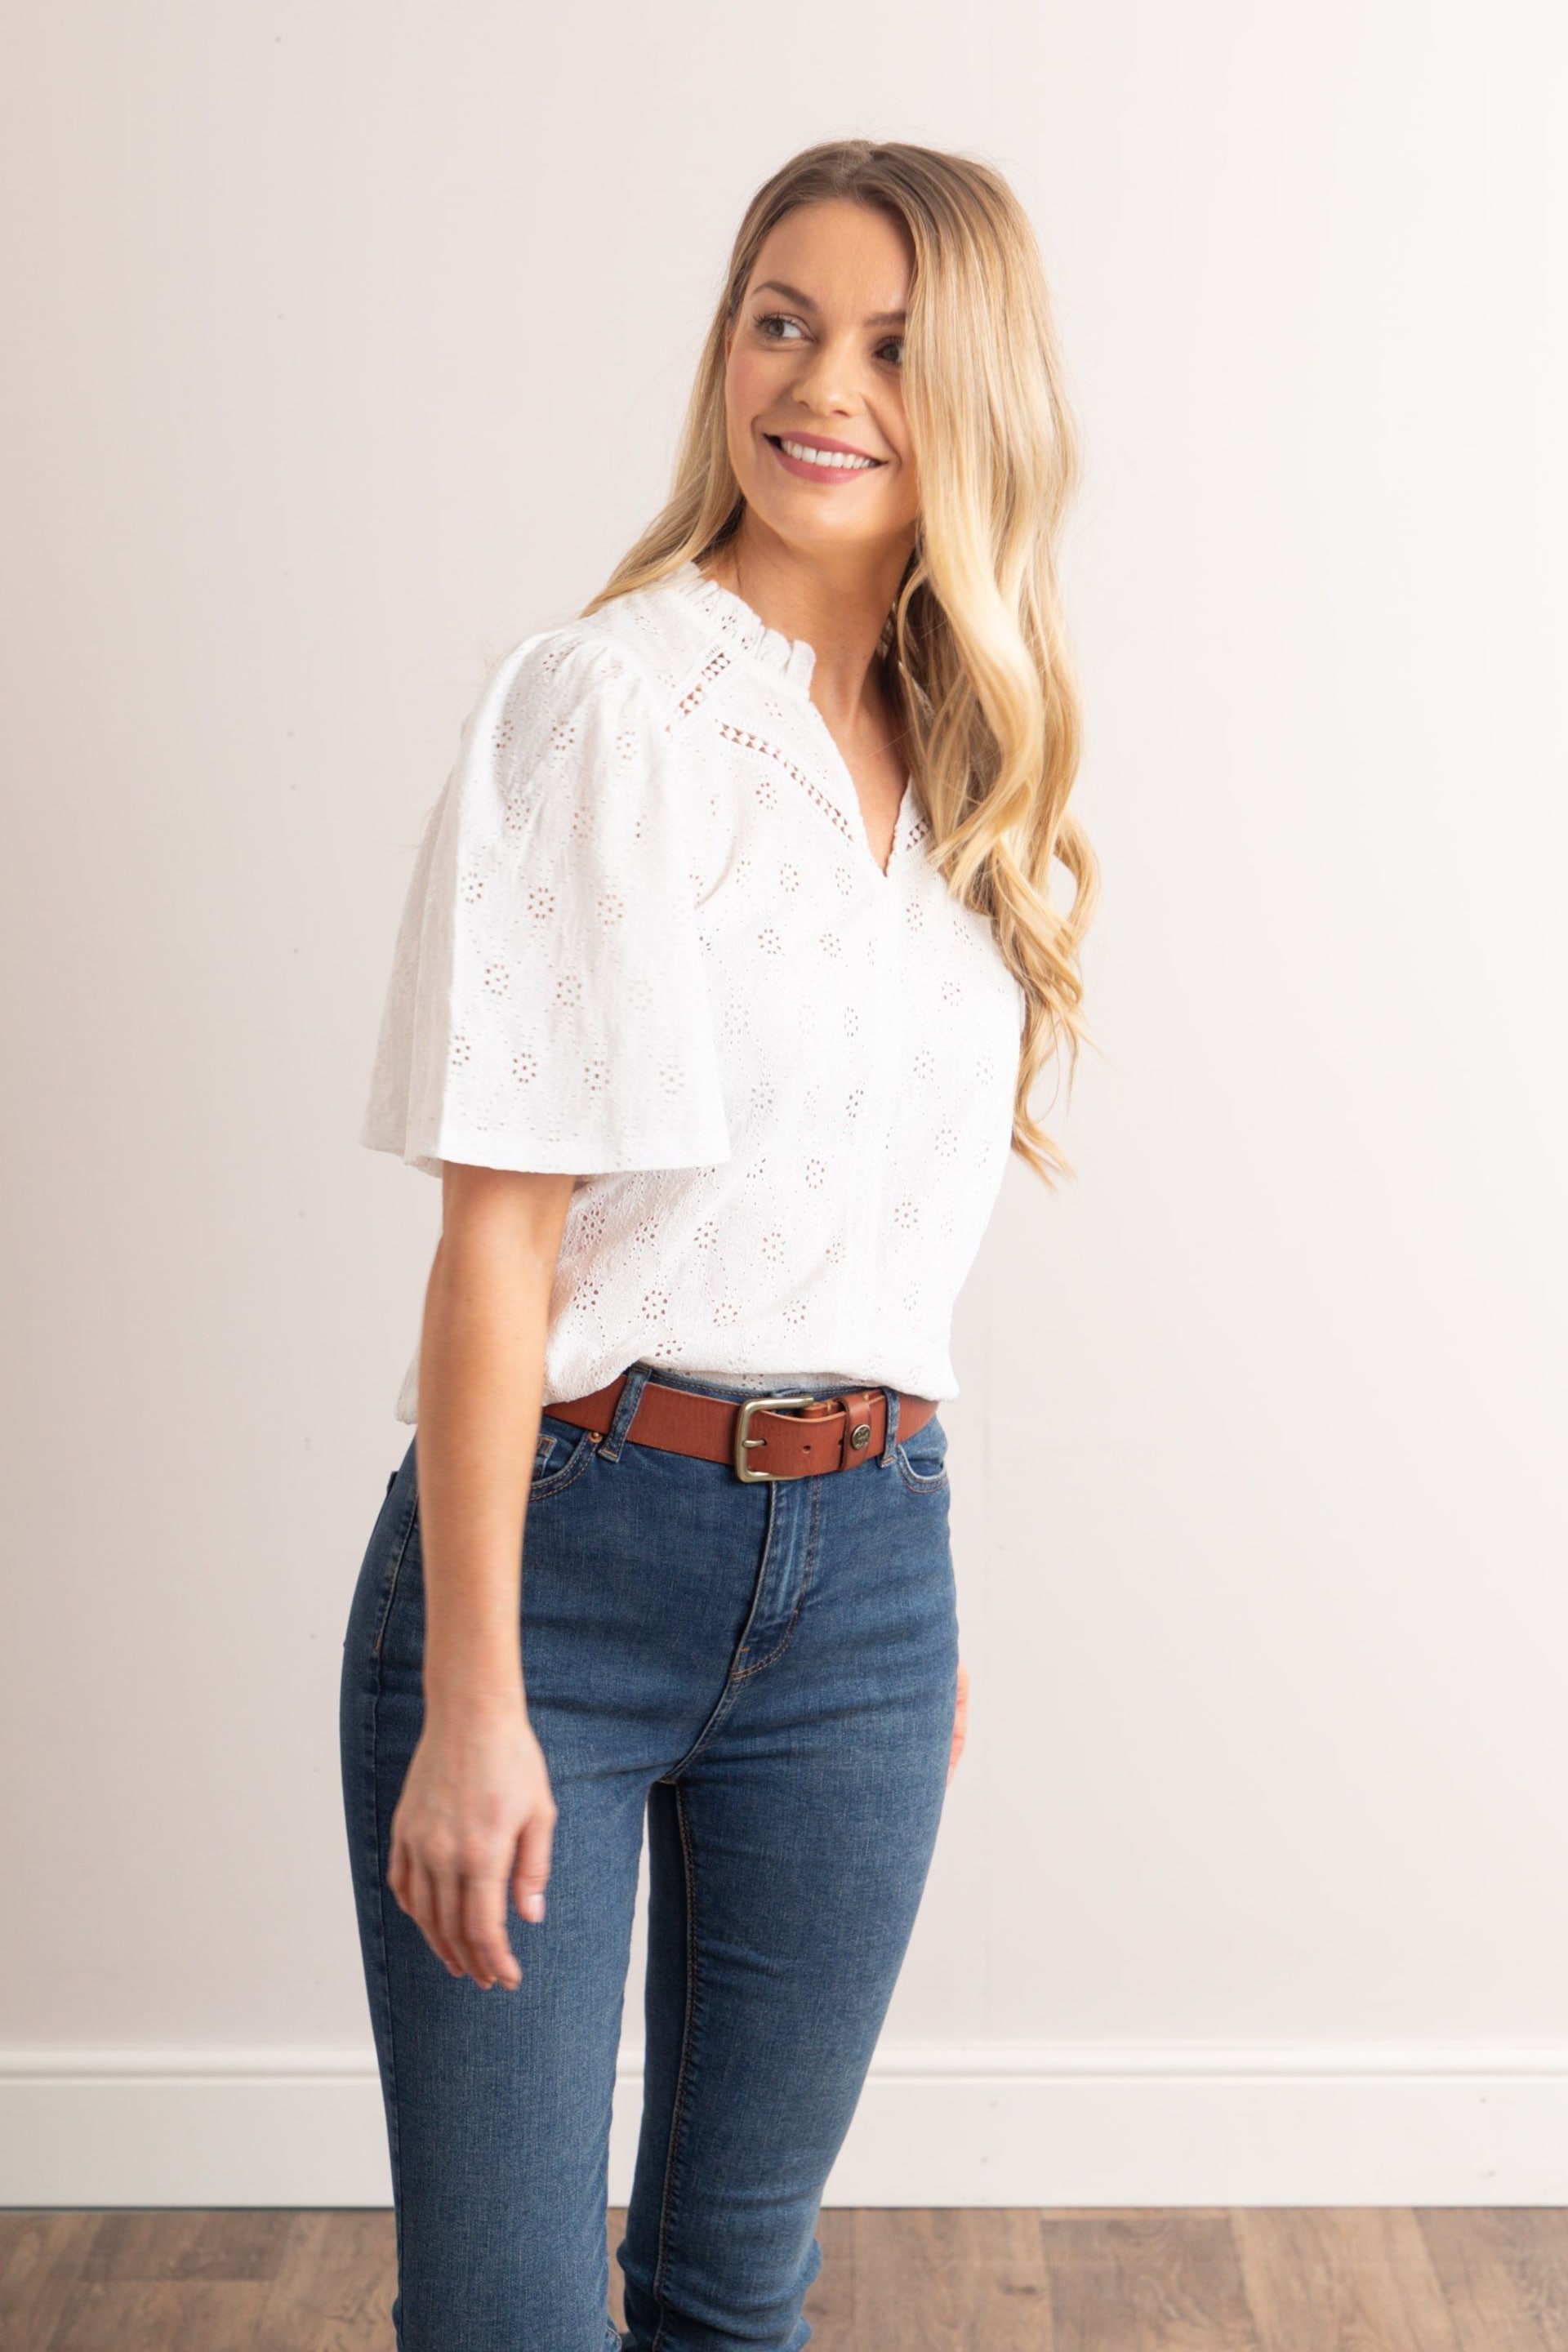 Lakeland Clothing Sasha Pointelle Short Sleeve White Blouse - Image 3 of 6